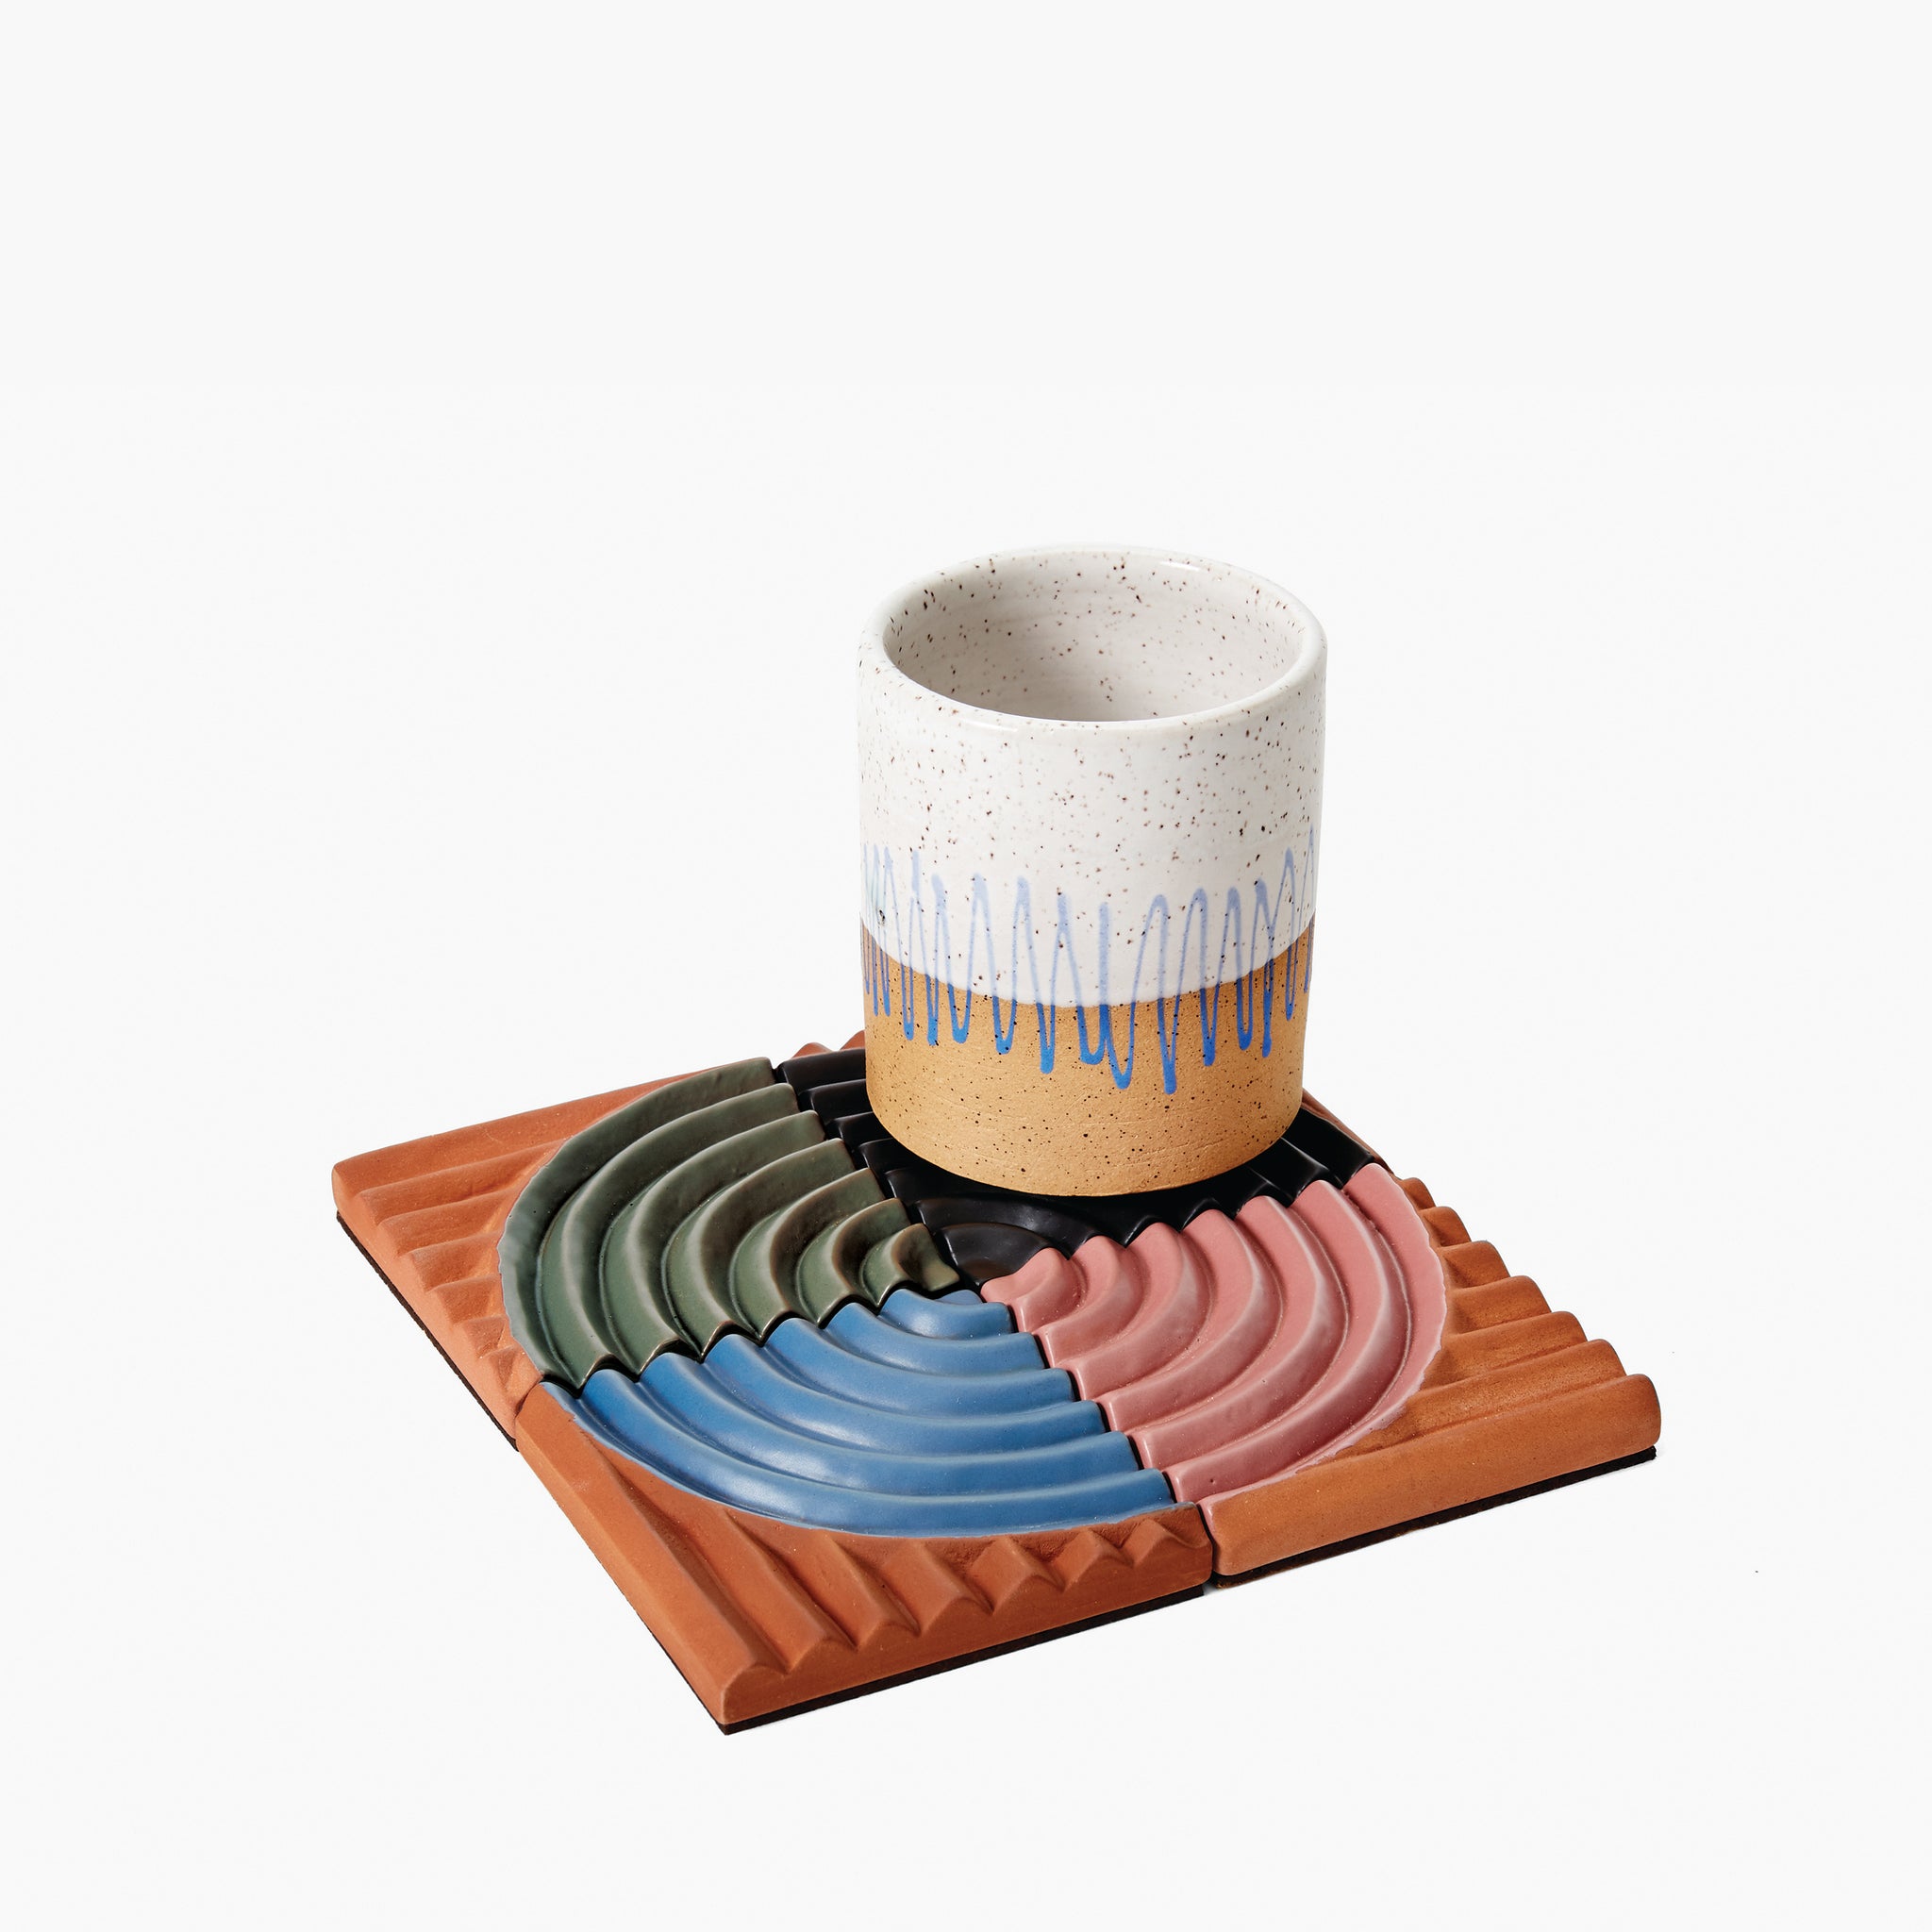 Botanical or boho ceramic coasters – sweep of sand